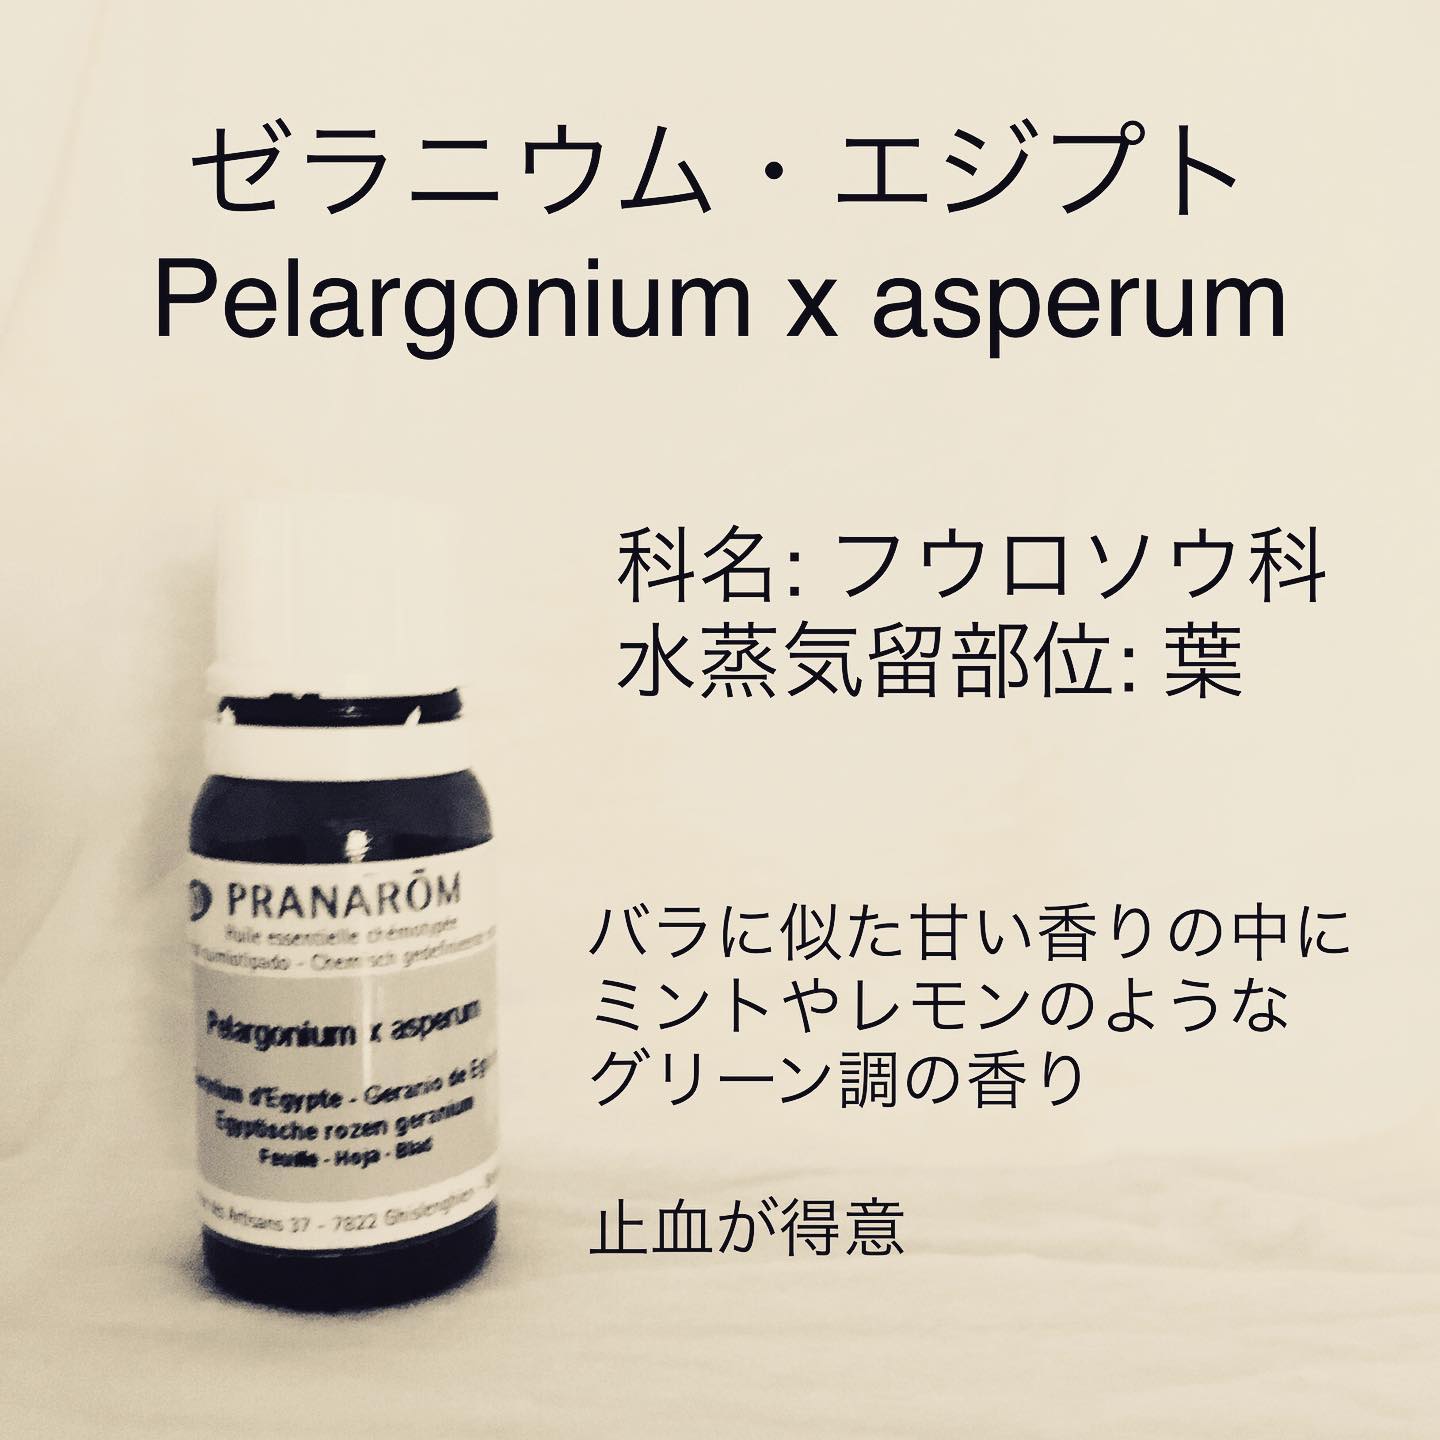 ゼラニウム・エジプト/Pelargonium x asperum/科名: フウロソウ科/水蒸気蒸留部位: 葉